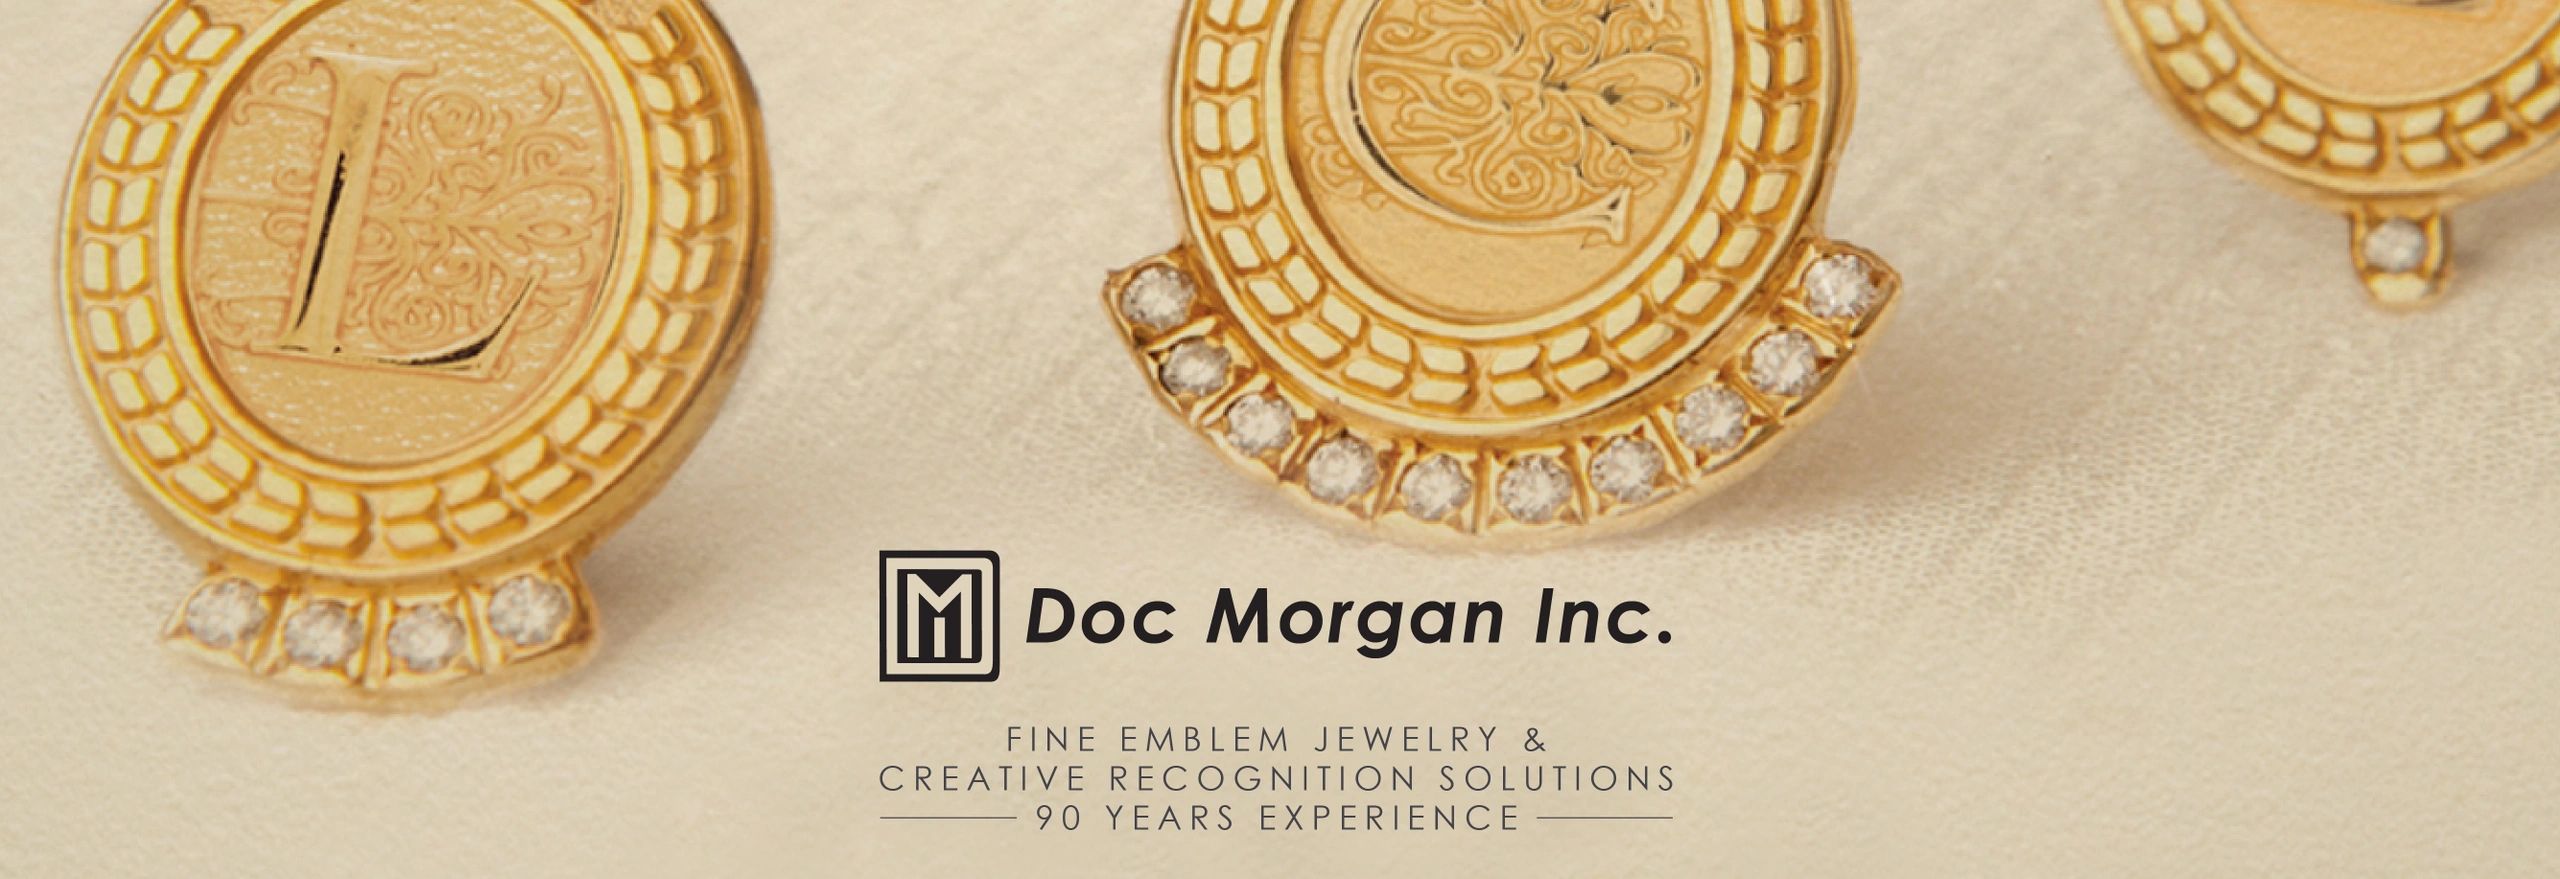 Doc Morgan Inc